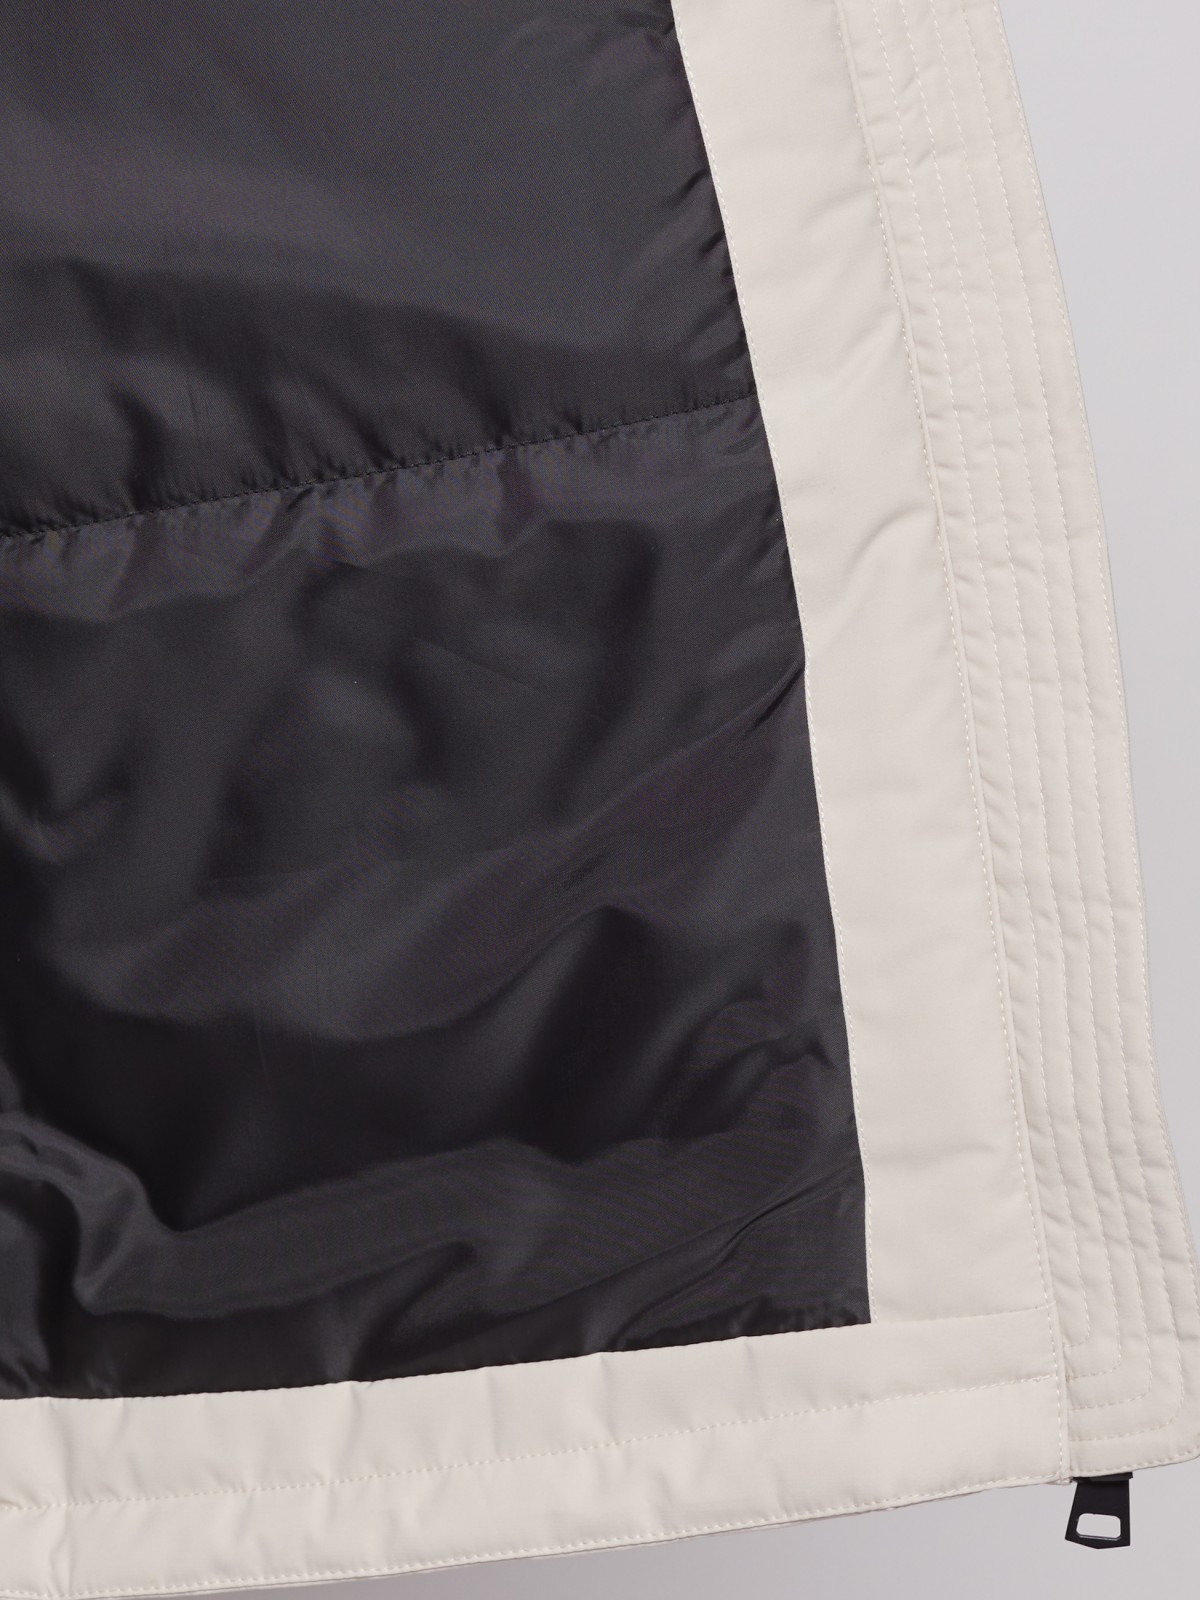 Утеплённая куртка с капюшоном zolla 022125102184, цвет молоко, размер XS - фото 4